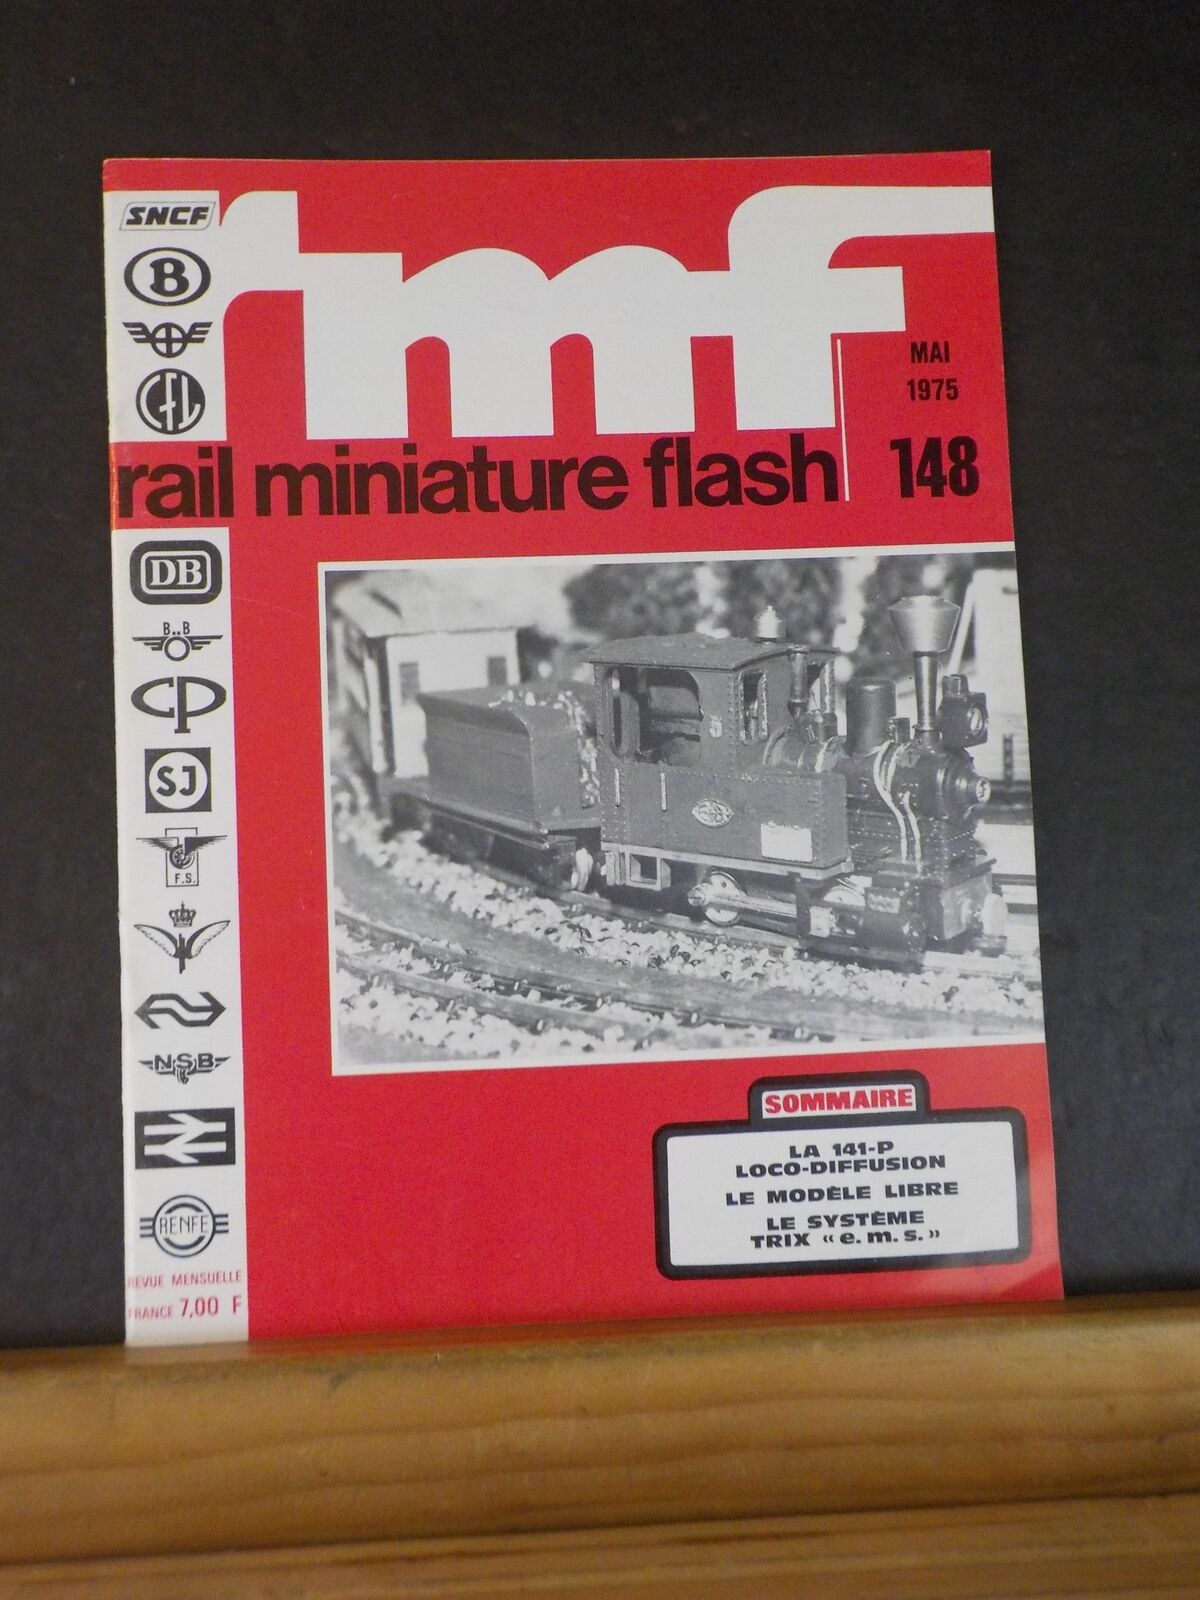 Rail Miniature Flash 148 1975 Mai Ia 141-P Loco-Diffusion le systeme Trix